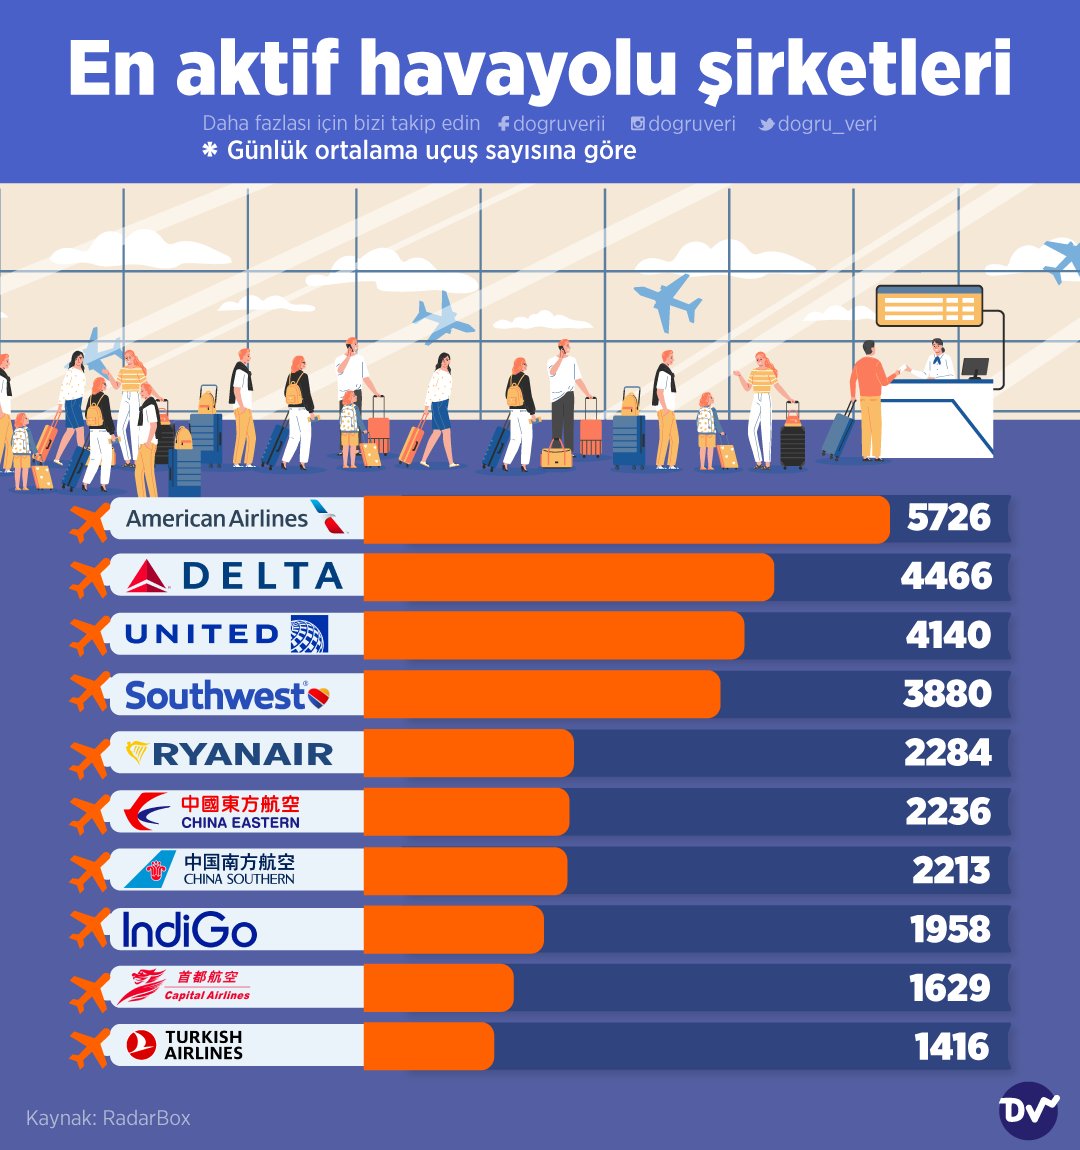 🛫 Günlük ortalama uçuş sayısına göre en aktif havayolu şirketleri araştırdık. American Airlines günlük 5726 uçuşu ile en aktif havayolu şirketi olarak karşımıza çıkıyor. 🇹🇷 Listede 1416 uçuşla Türk Hava Yolları da bulunuyor.